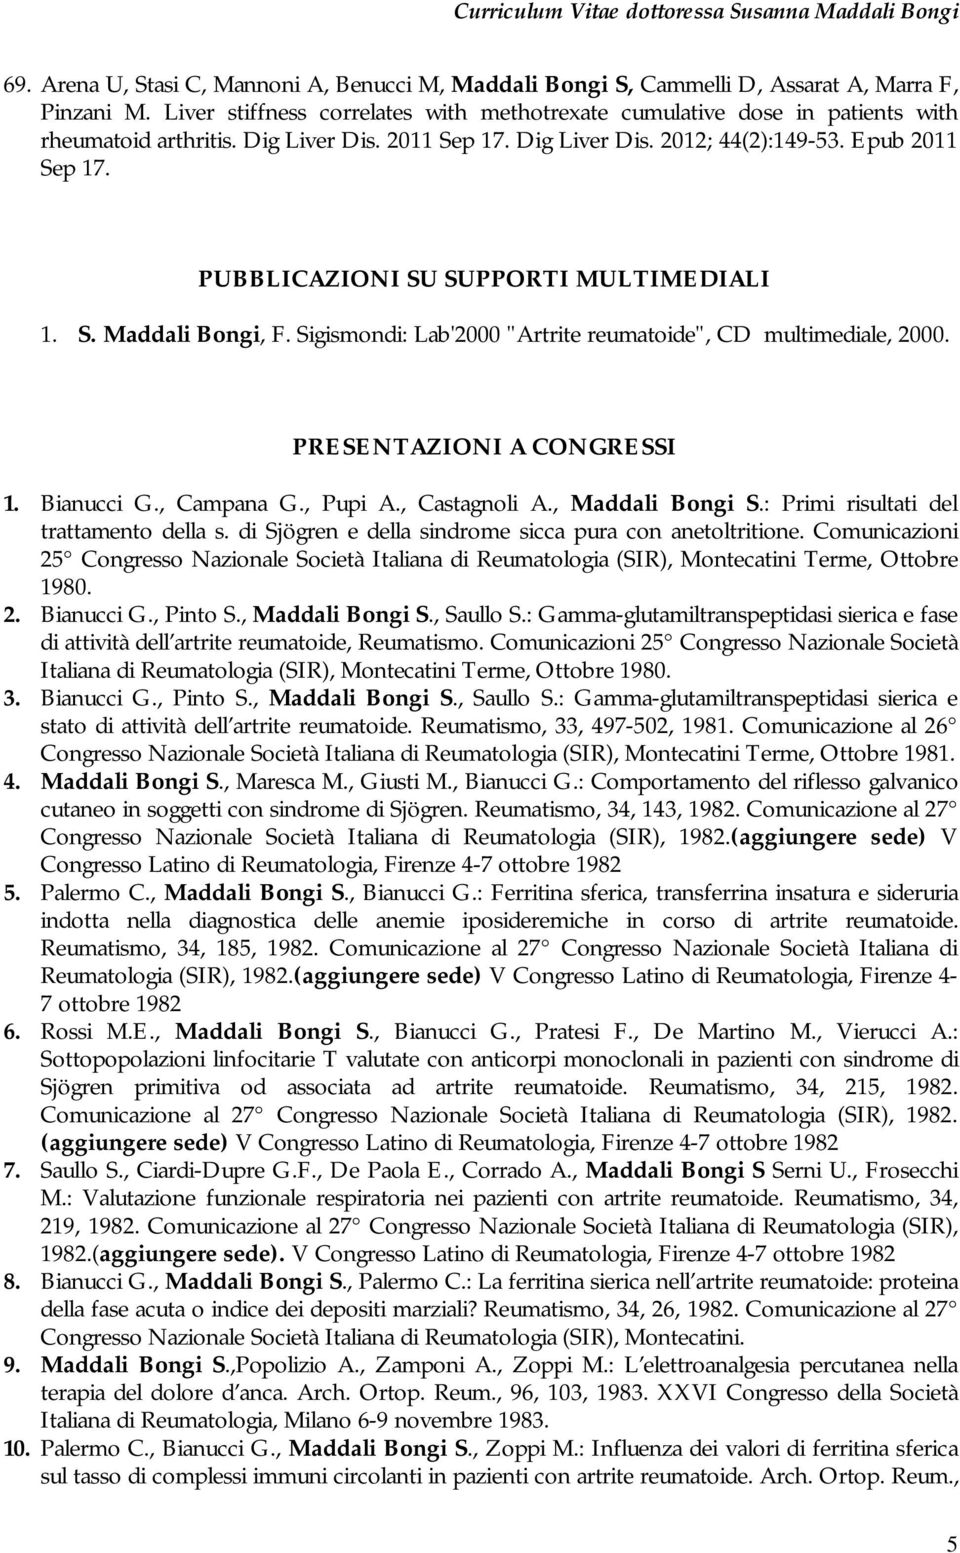 PUBBLICAZIONI SU SUPPORTI MULTIMEDIALI 1. S. Maddali Bongi, F. Sigismondi: Lab'2000 "Artrite reumatoide", CD multimediale, 2000. PRESENTAZIONI A CONGRESSI 1. Bianucci G., Campana G., Pupi A.